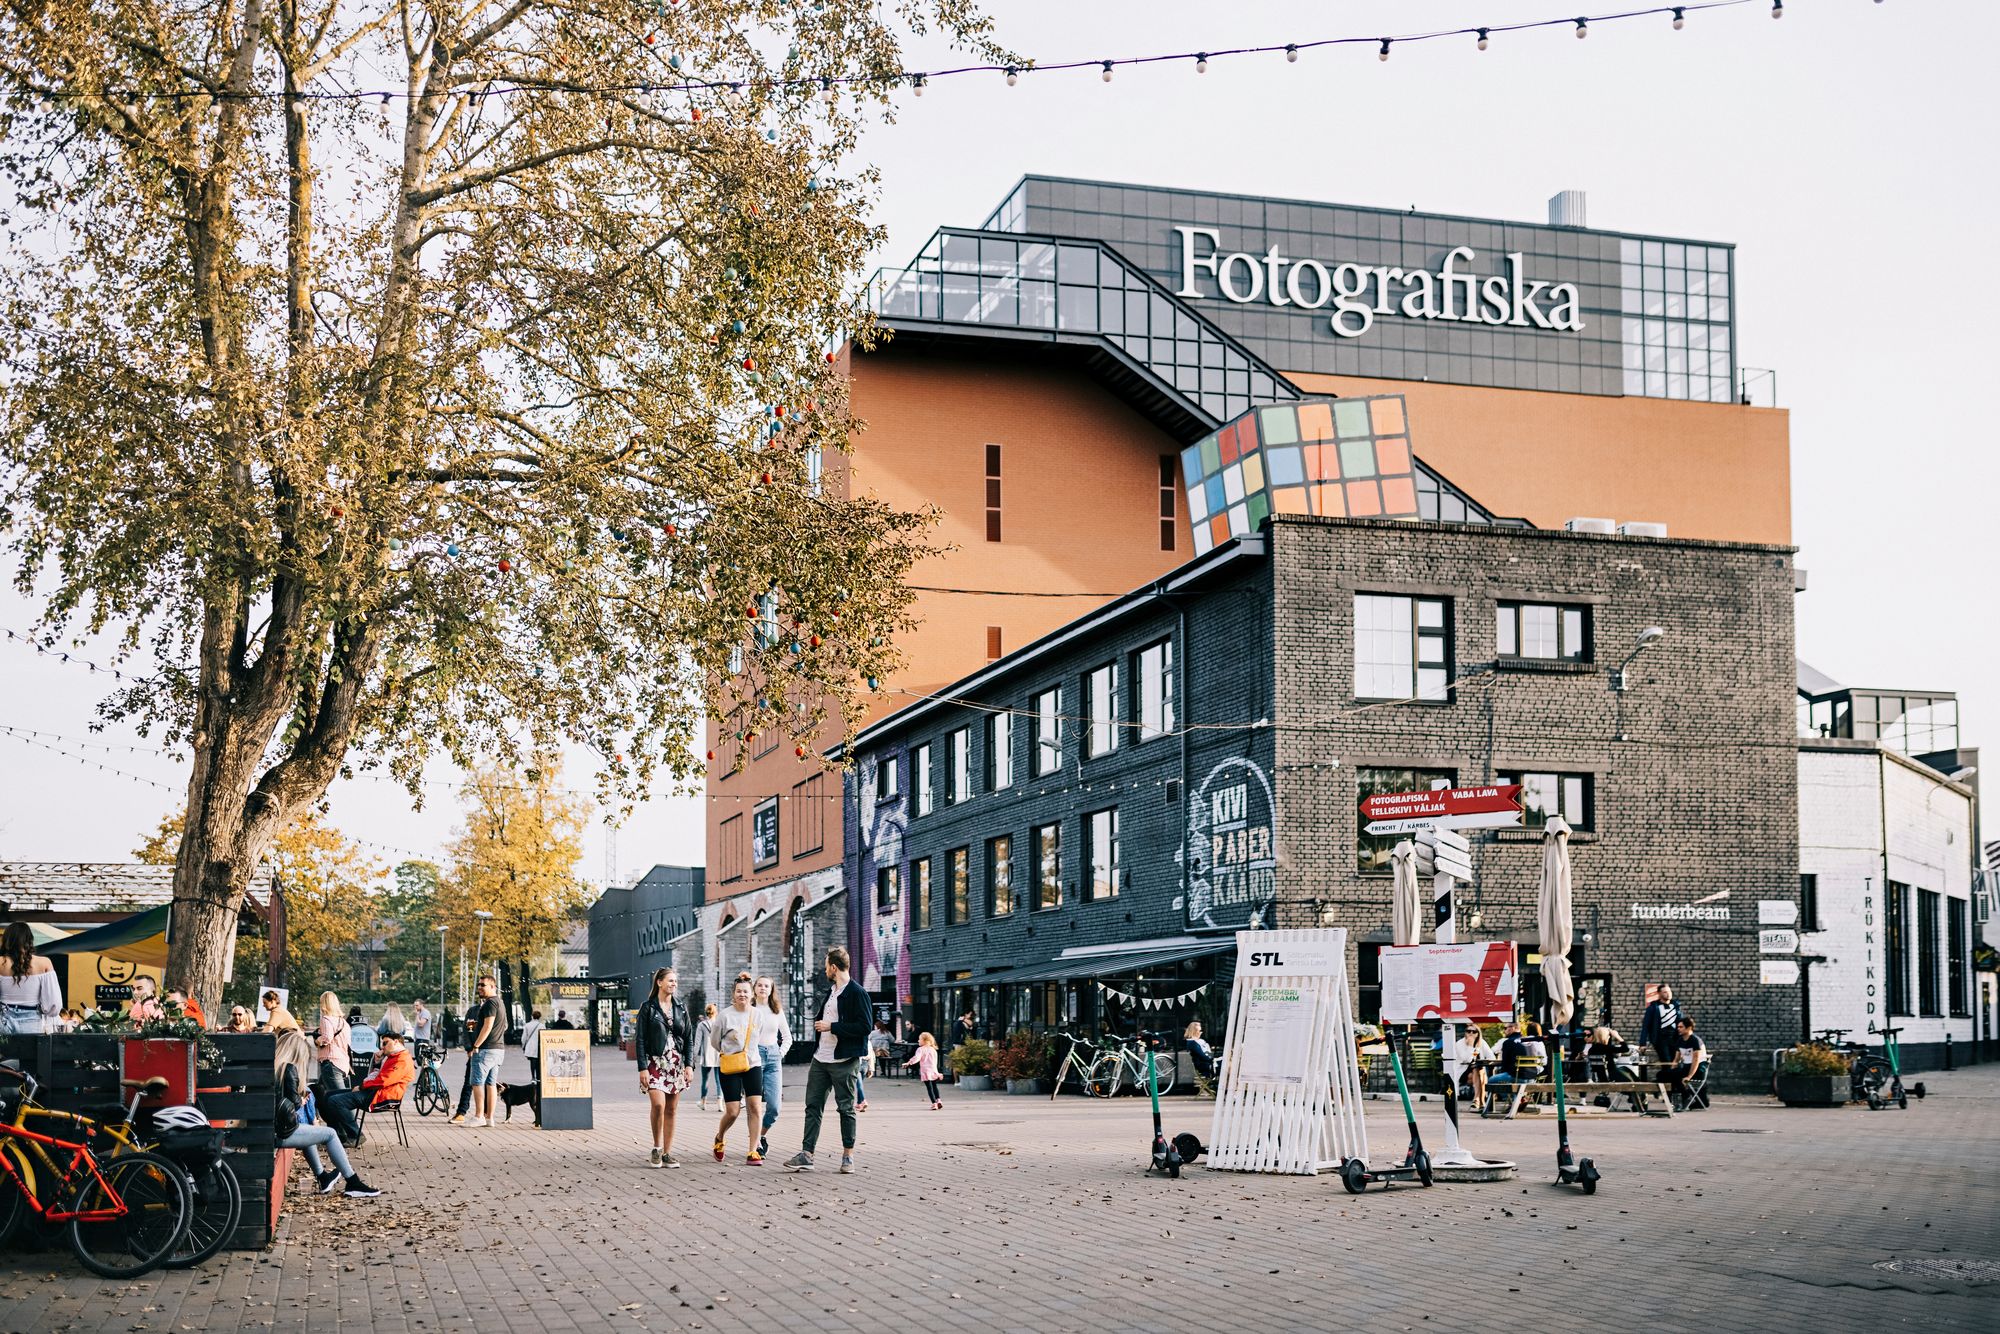 Fotografiska laajentui Tukholmasta Tallinnaan. Osoite on Telliskivi tänav 60a/8. © Visit Tallinn